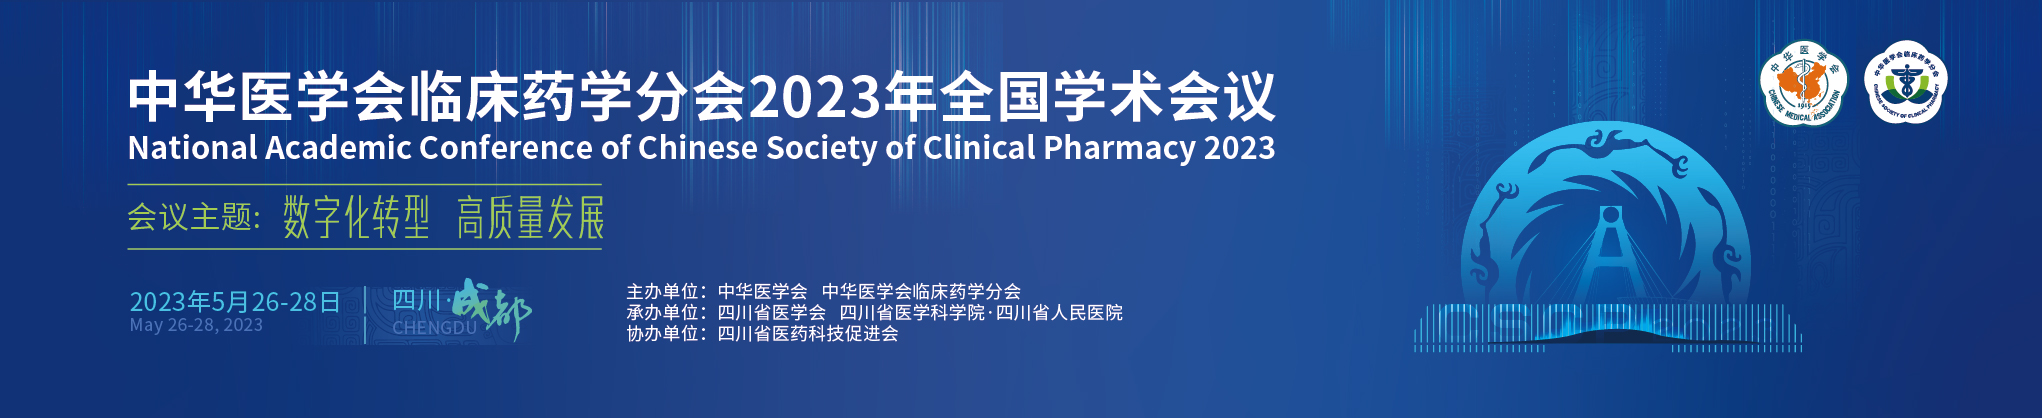 中华医学会临床药学分会2023年全国学术会议